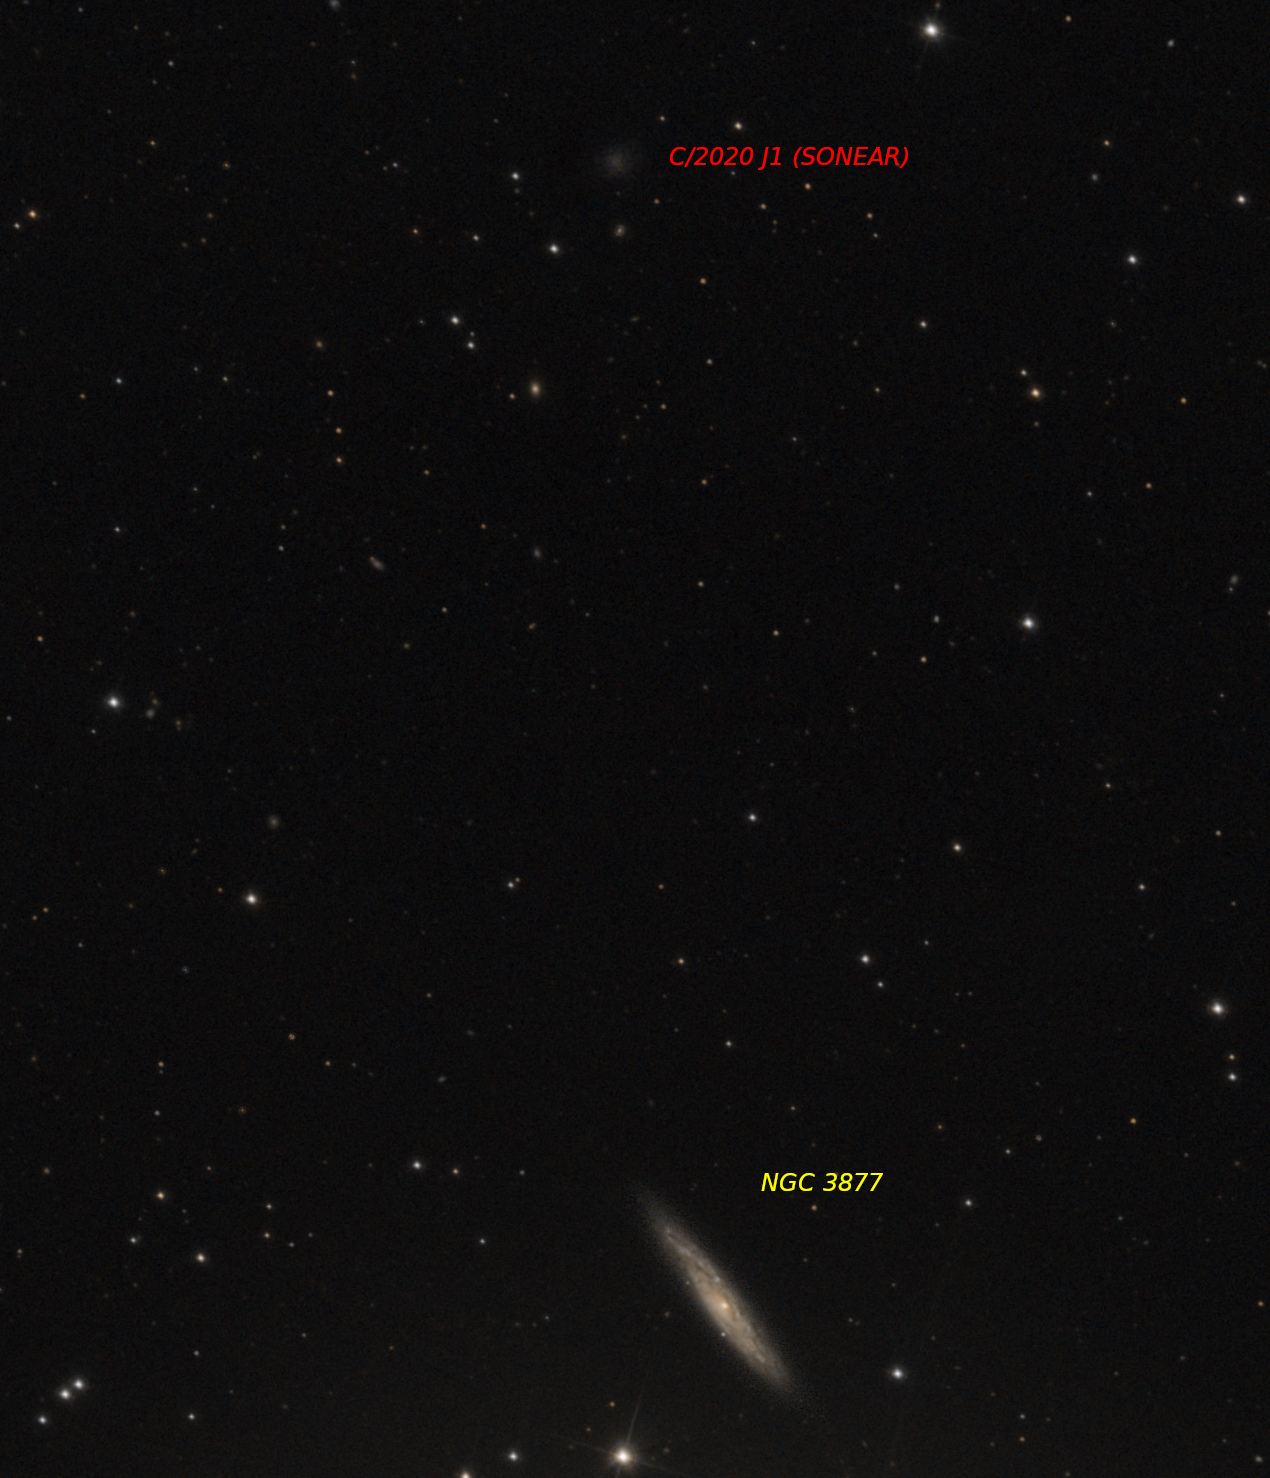 Crop_C2020J1_avec_NGC3877.jpg.1c793dfbea73af1ac932b018ccf46cef.jpg